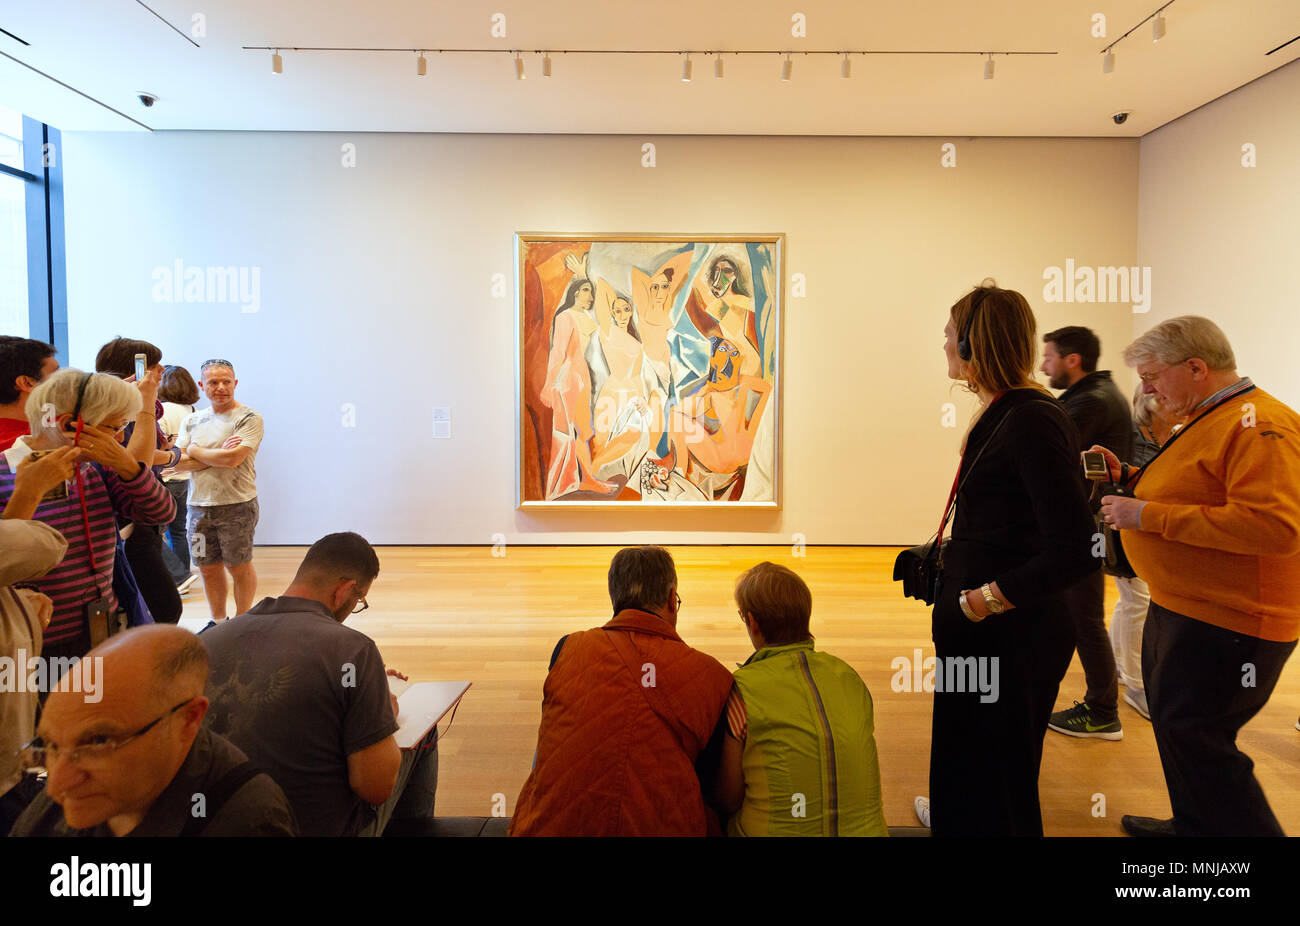 Les visiteurs de MoMA, Museum of Modern Art, New York en regardant Les Demoiselles d'Avignon de Pablo Picasso peinture à l'huile Banque D'Images